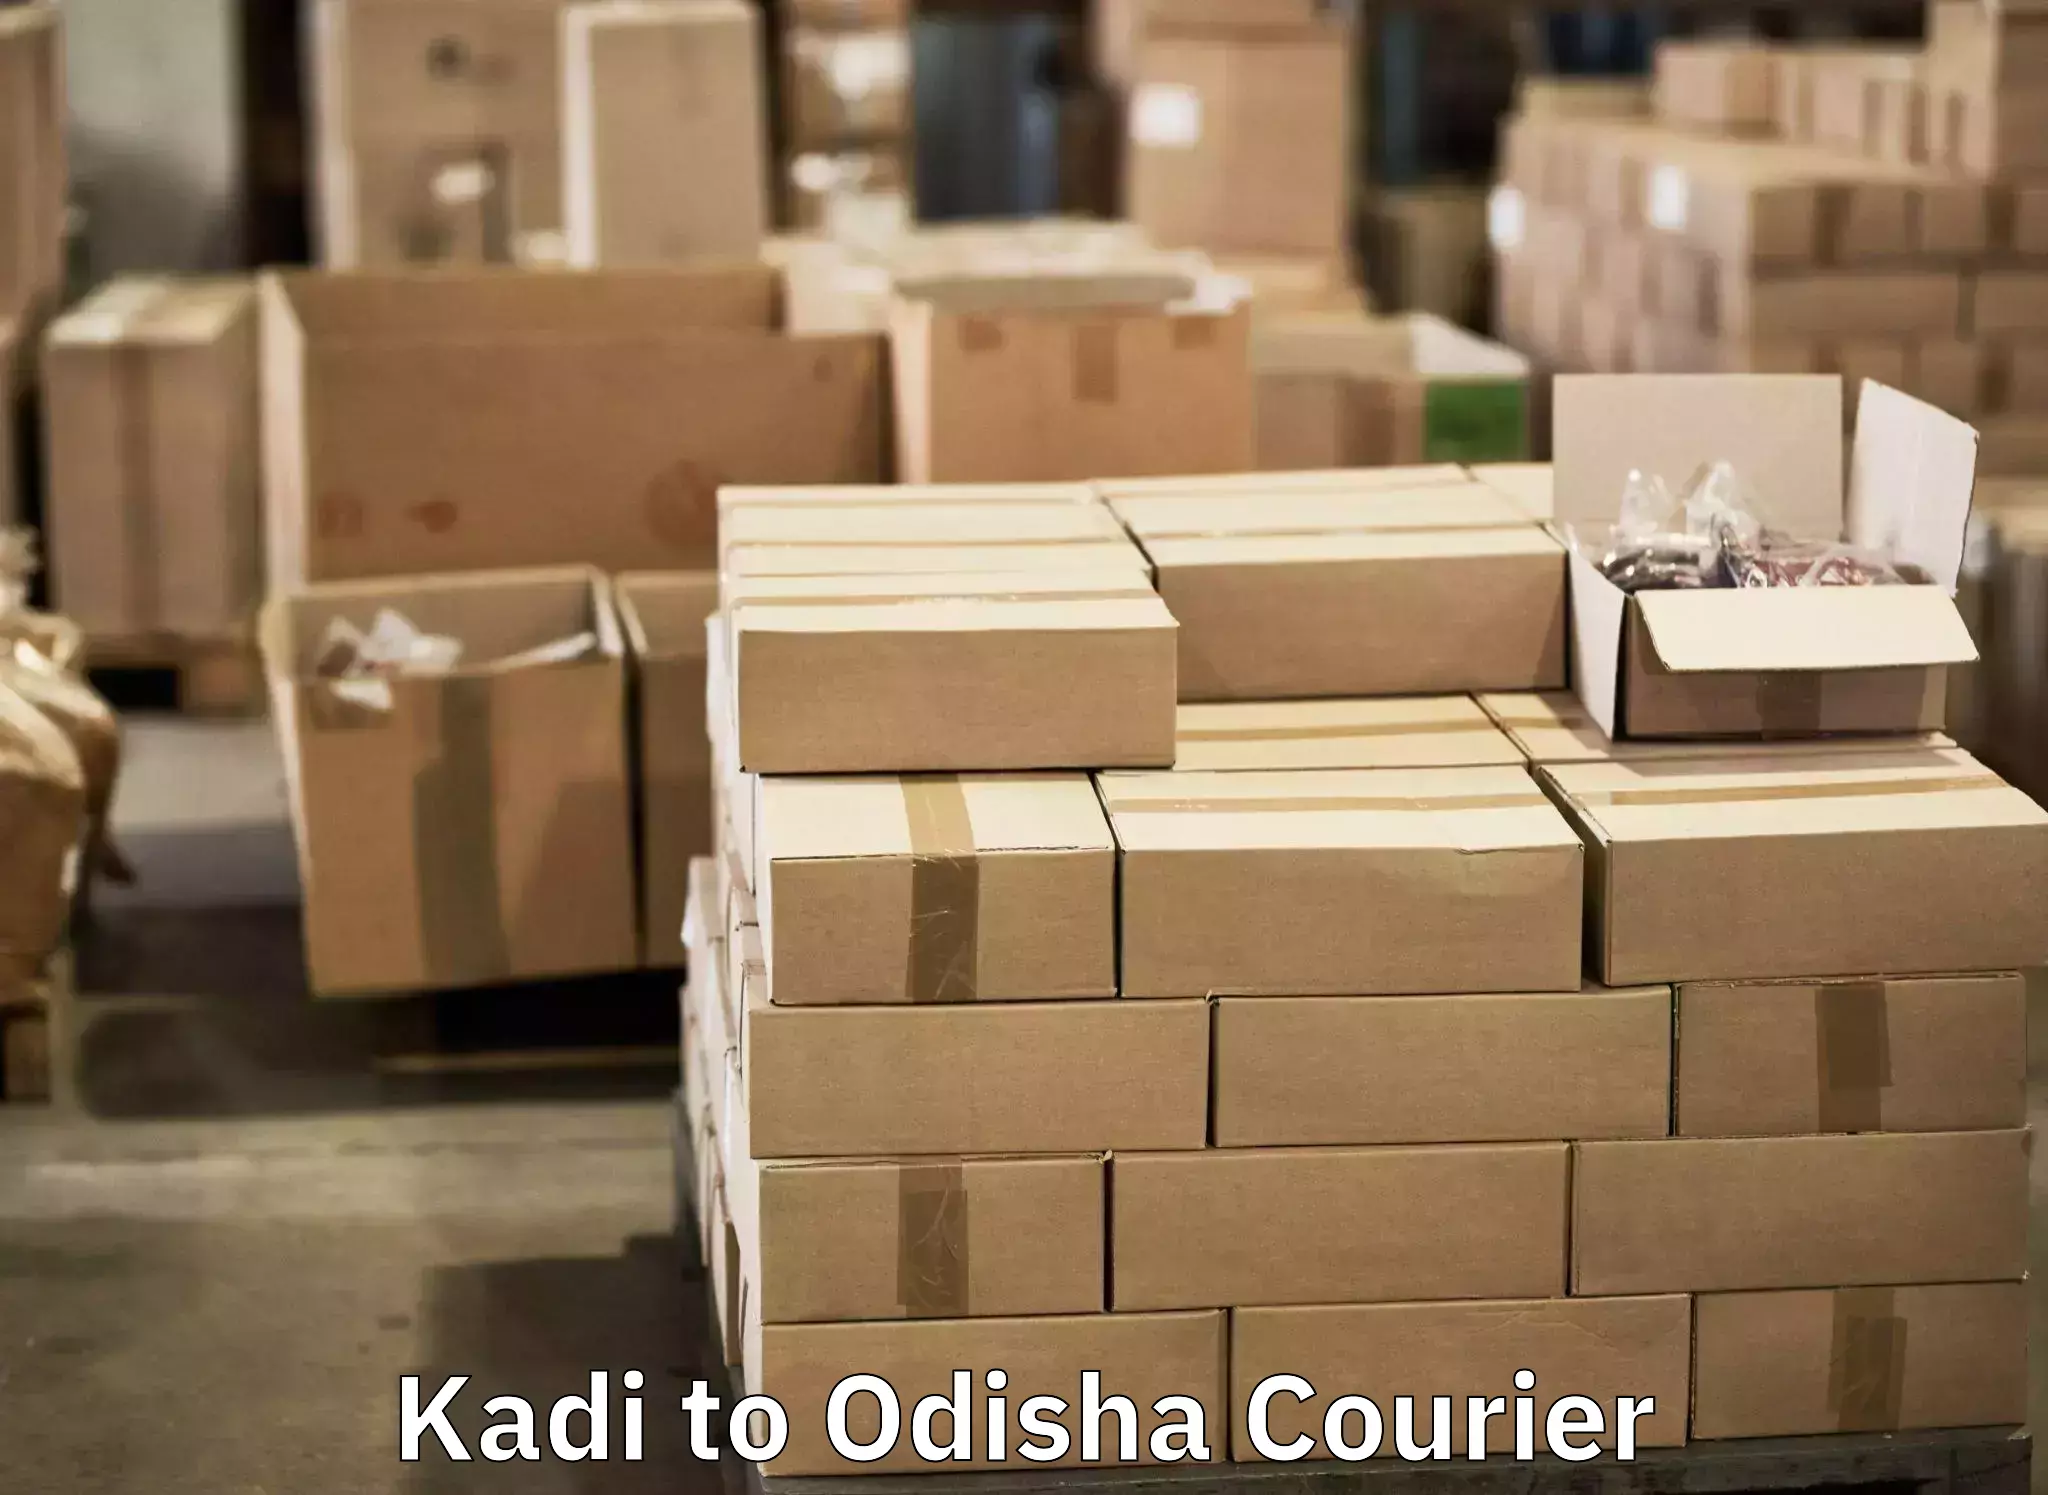 Door-to-door baggage service in Kadi to Kupari